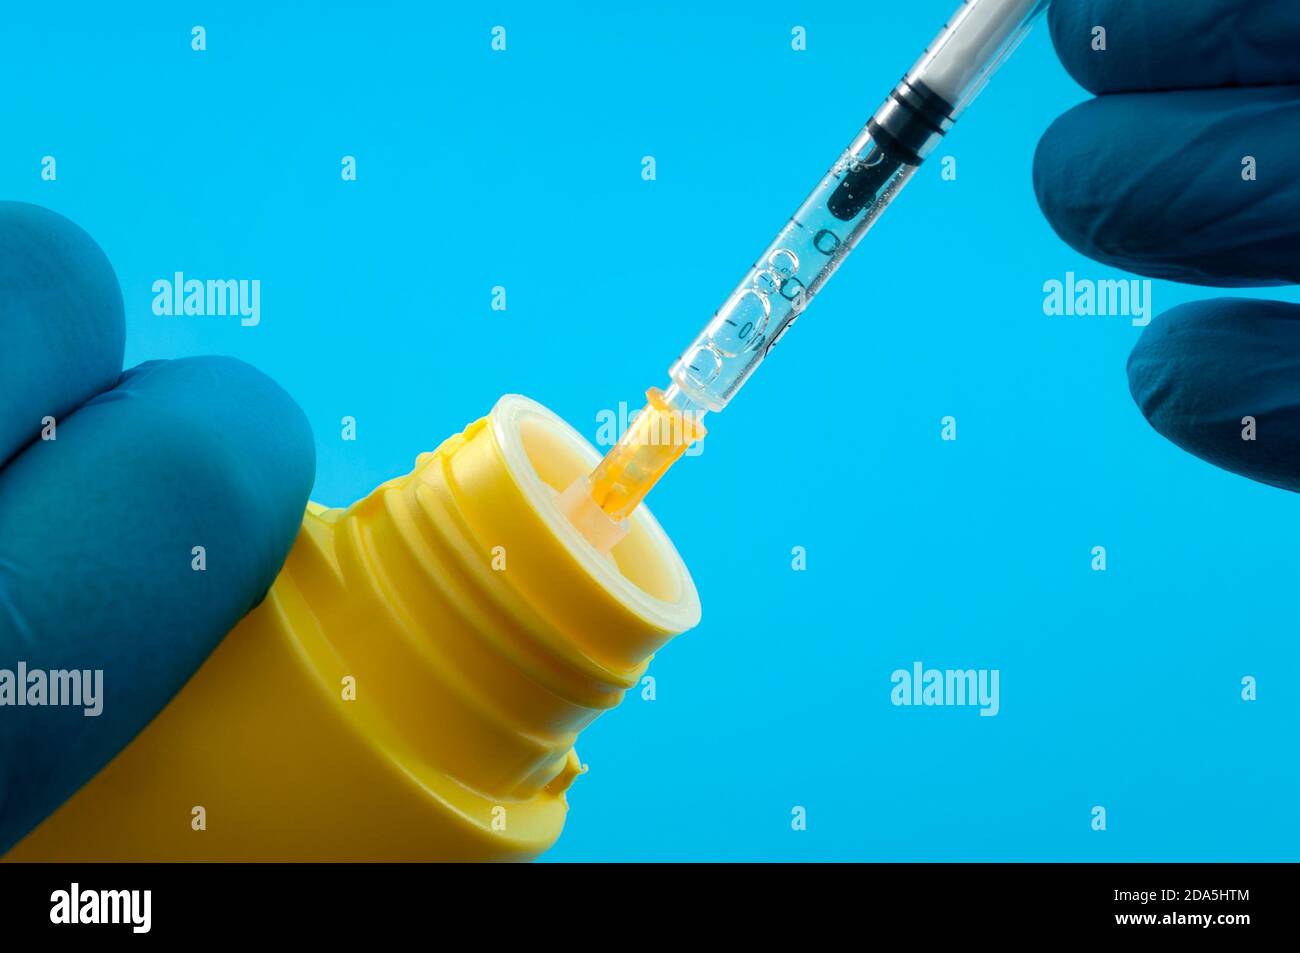 Bitte injizieren Sie Desinfektionsmittel Konzept nicht mit Arzt in blauen  Latexhandschuhe, Spritze und Chlorbleichflasche isoliert auf blauem  Hintergrund Stockfotografie - Alamy